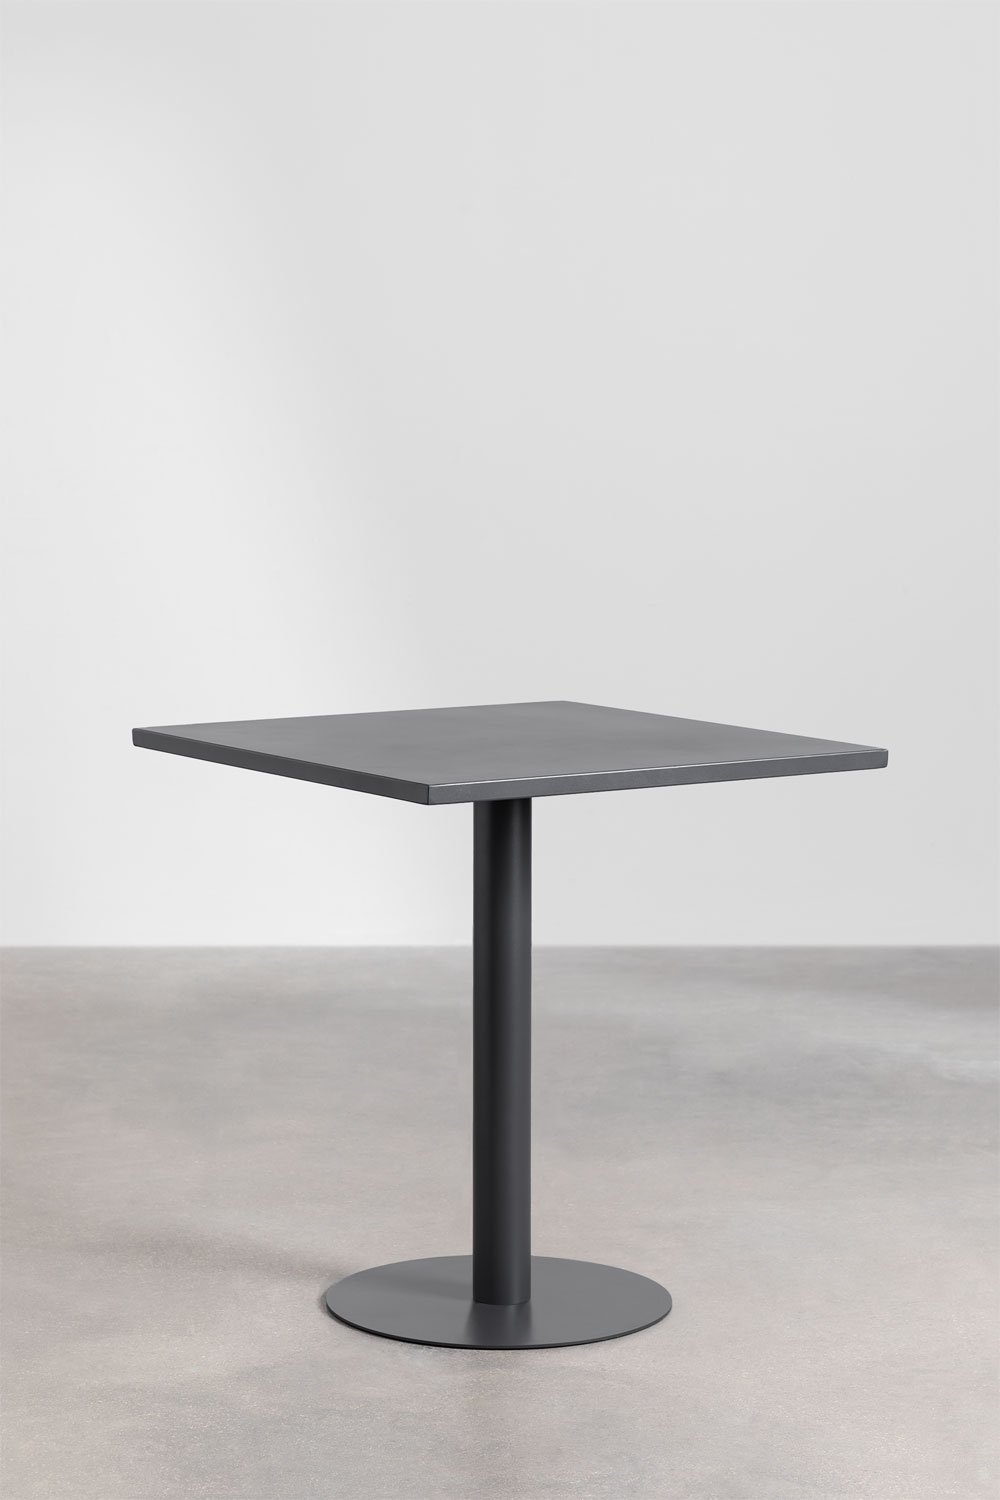 Tavolo da pranzo quadrato in metallo (70x70 cm) Mizzi, immagine della galleria 1